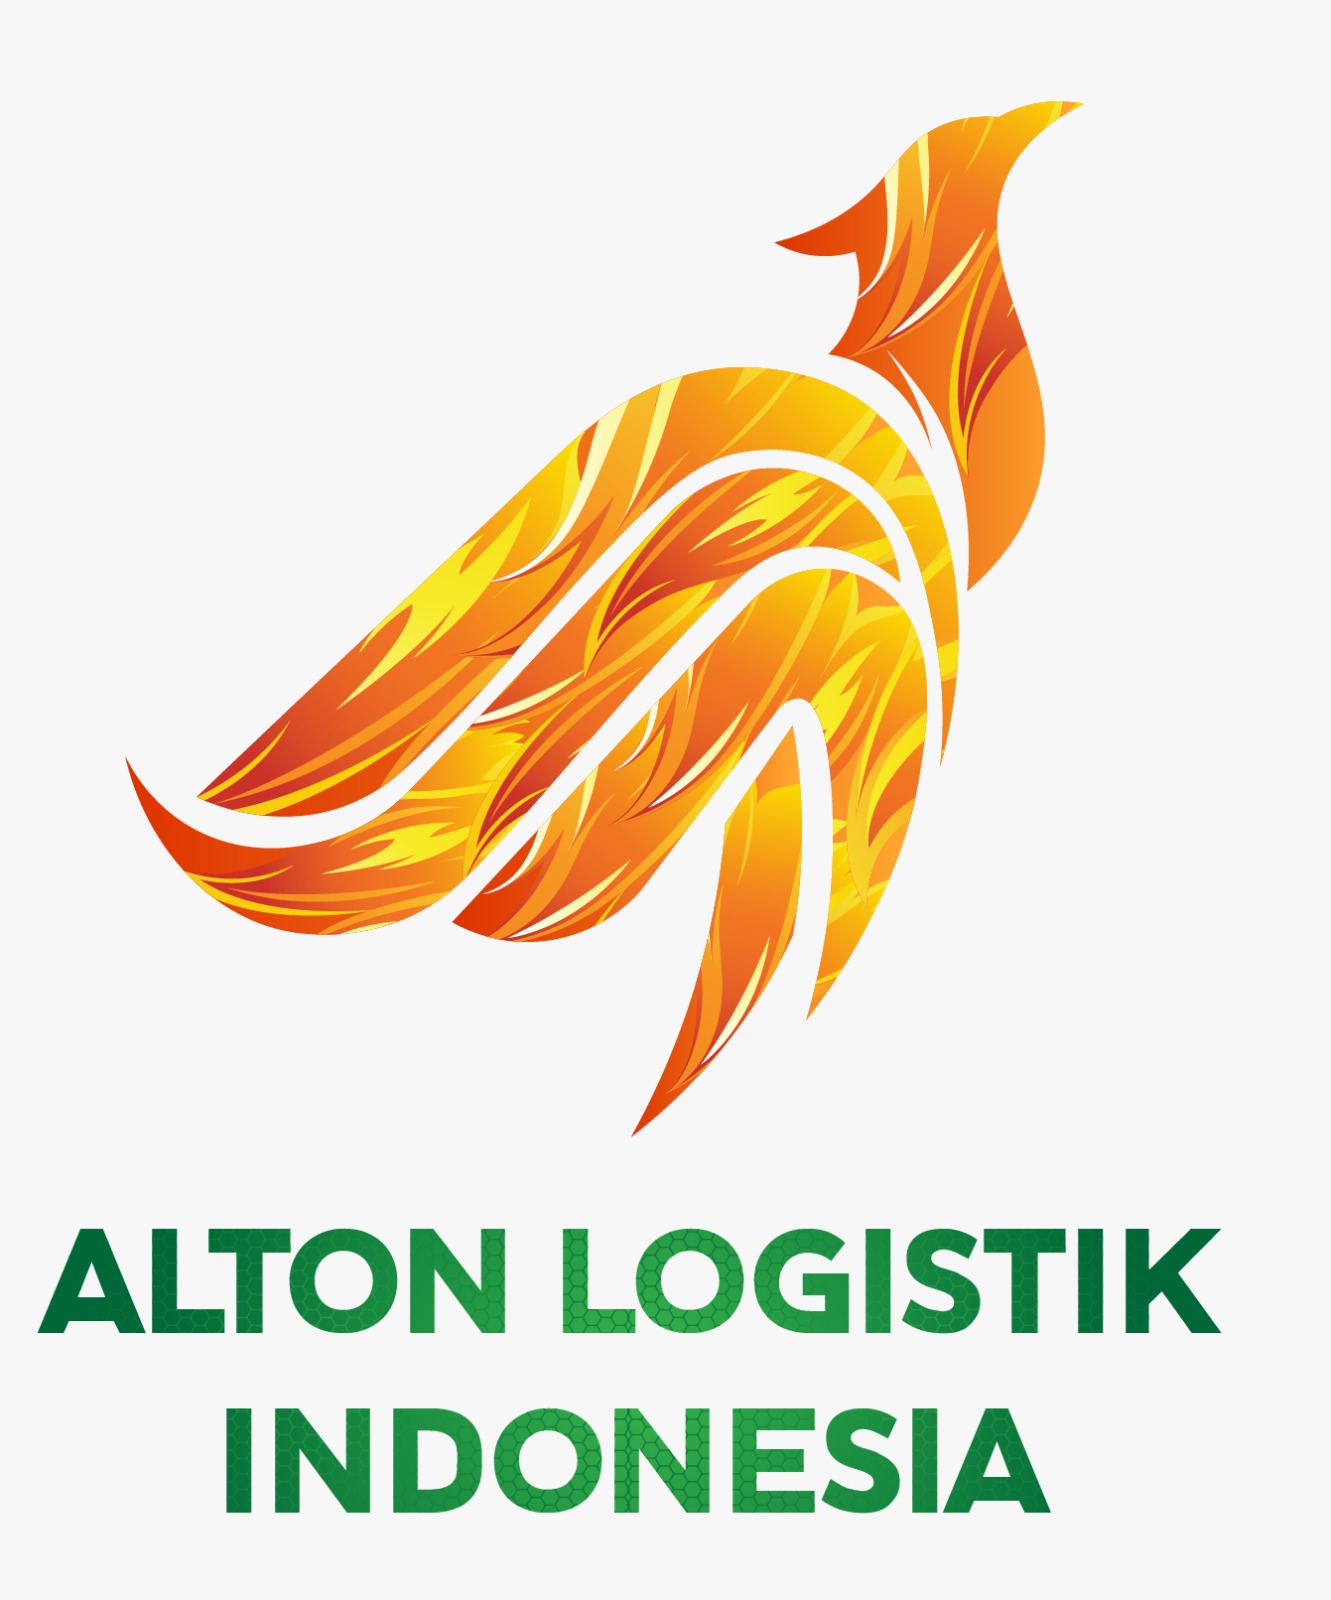 Peran Penting PT ELN dan Alton Logistik Indonesia Dukung Ketersediaan Kertas Thermal untuk Mesin ATM 